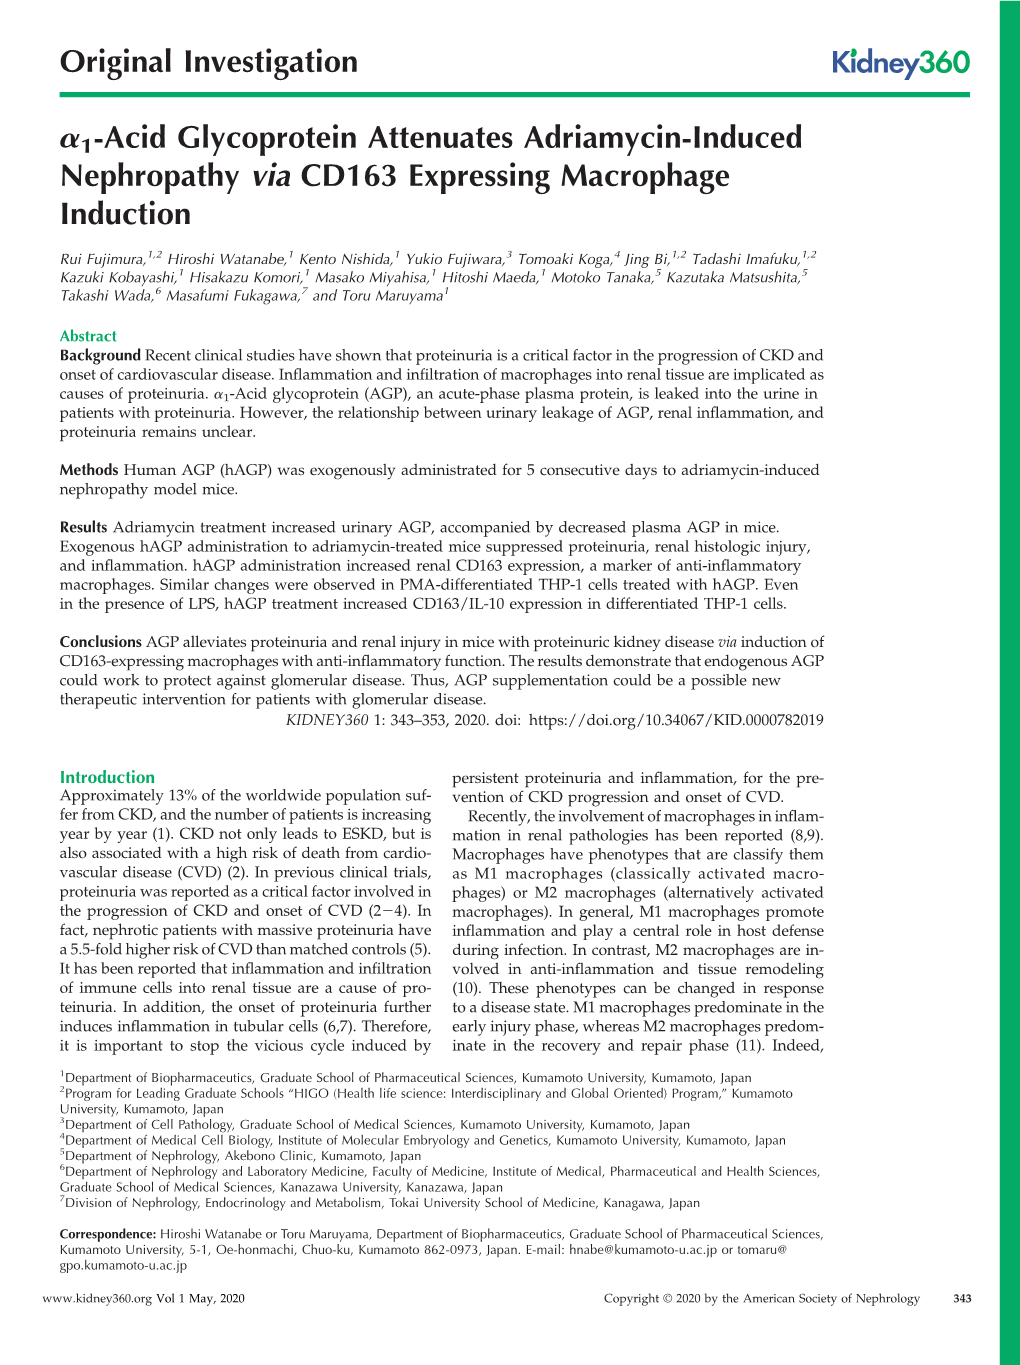 Α1-Acid Glycoprotein Attenuates Adriamycin-Induced Nephropathy Via CD163 Expressing Macrophage Induction